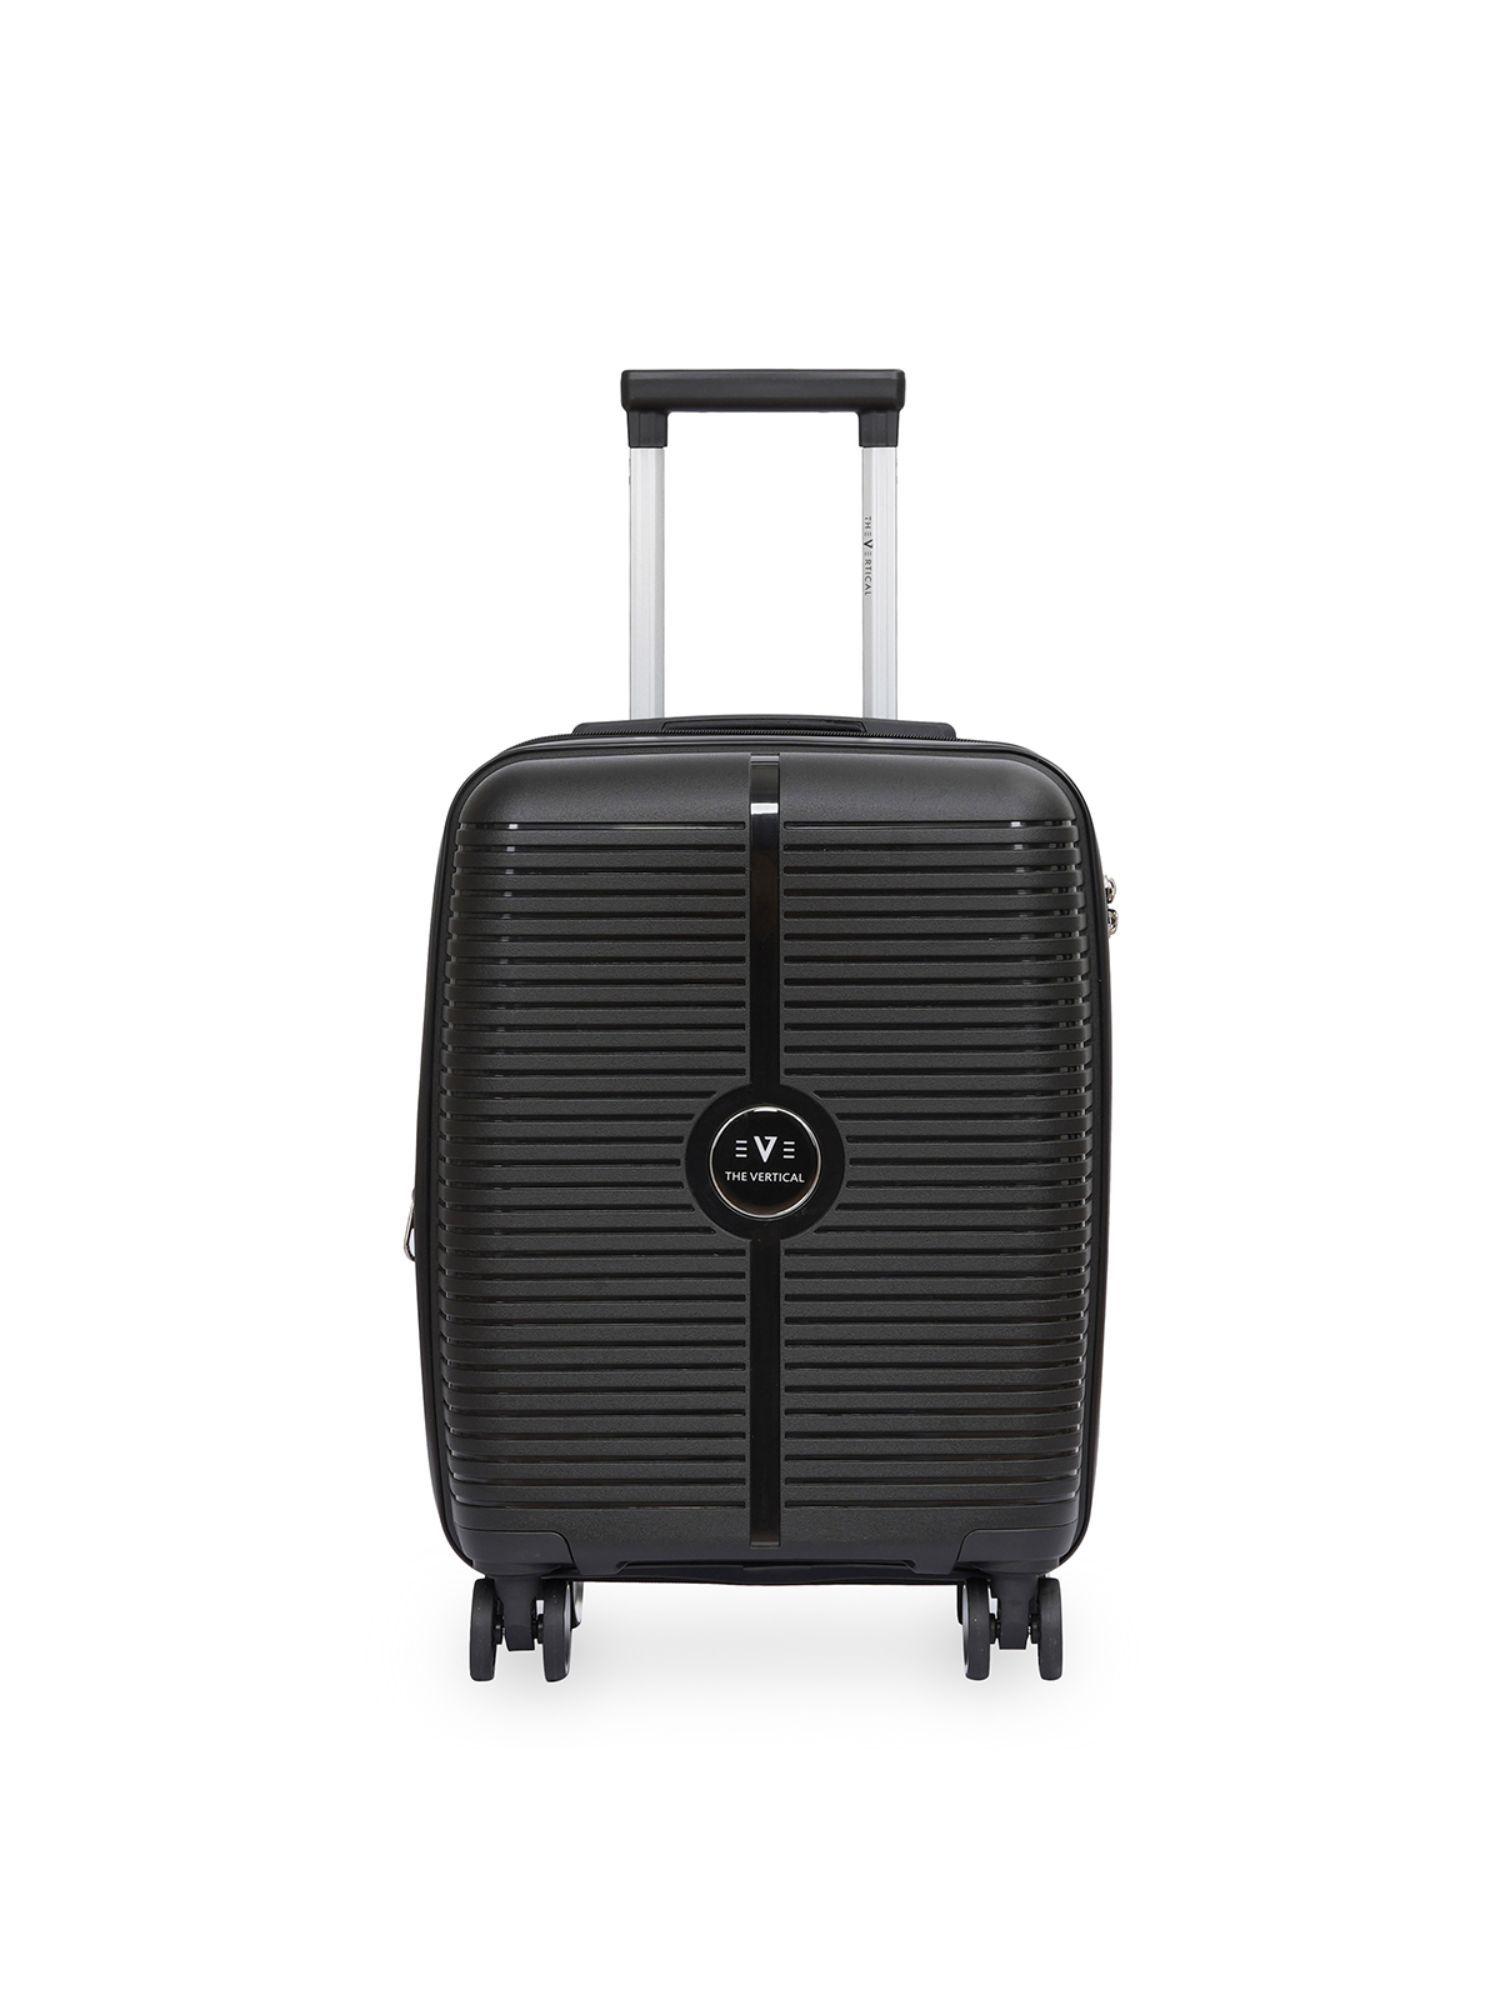 stellar unisex black hard luggage cabin trolley for travel